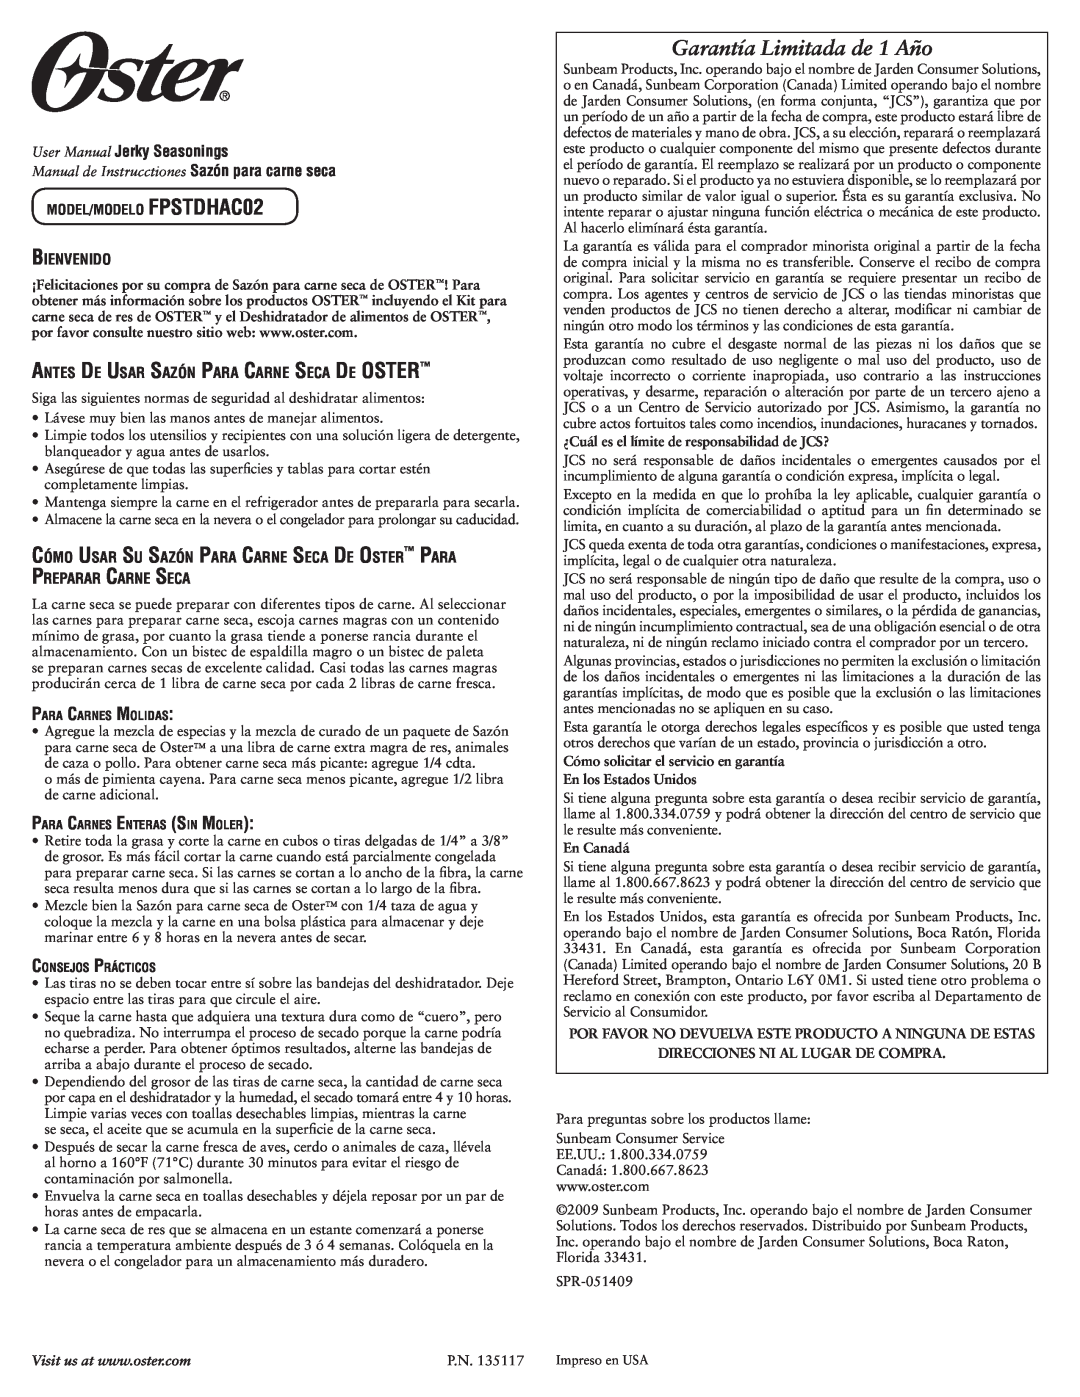 Oster FPSTDHAC02 warranty Garantía Limitada de 1 Año, Manual de Instrucctiones Sazón para carne seca, En los Estados Unidos 